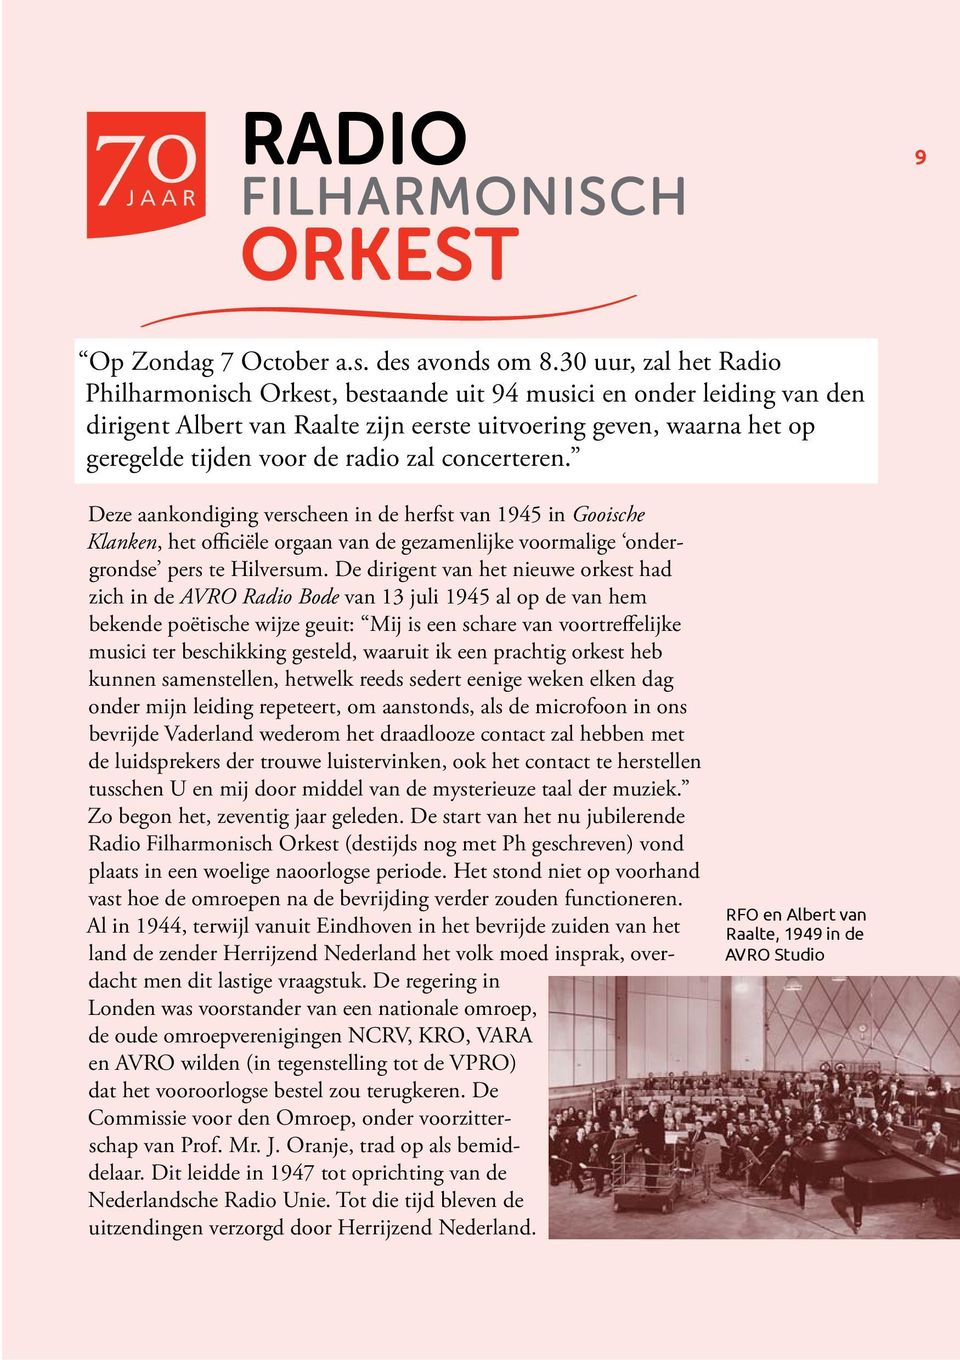 concerteren. Deze aankondiging verscheen in de herfst van 1945 in Gooische Klanken, het officiële orgaan van de gezamenlijke voormalige ondergrondse pers te Hilversum.